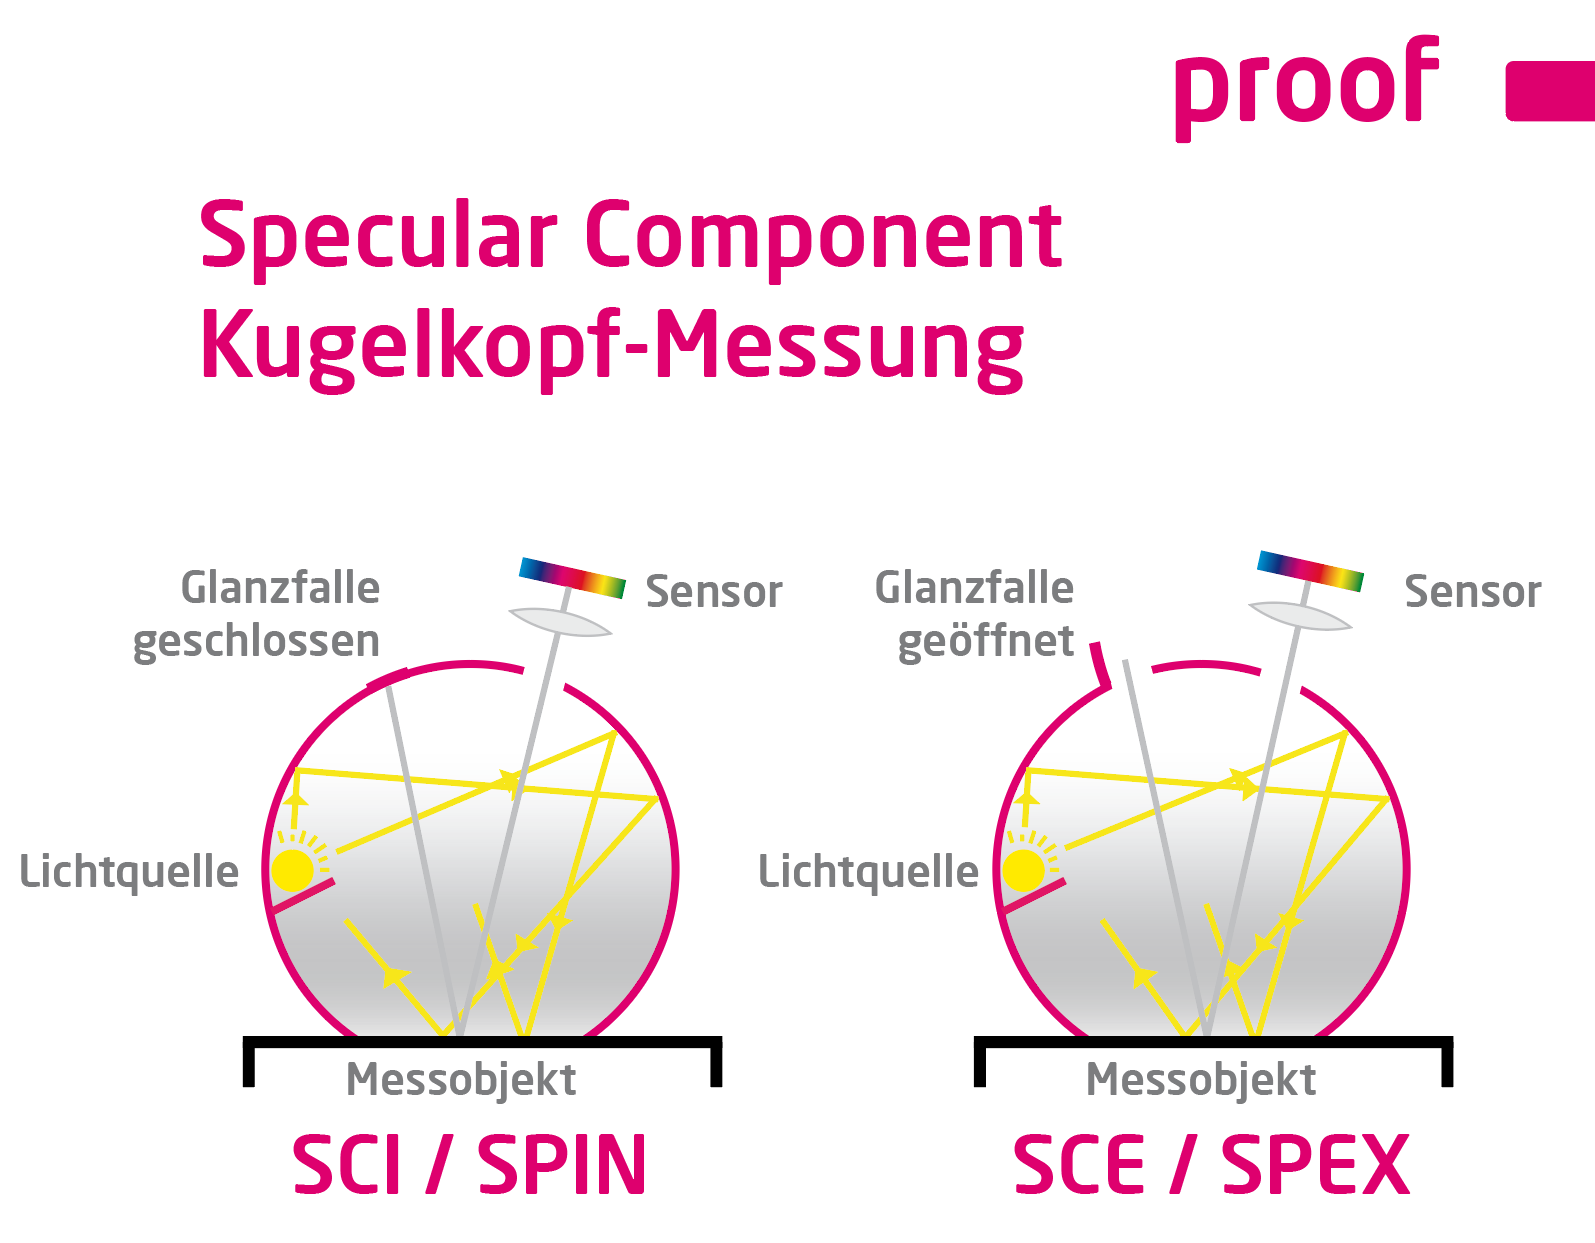 Εξηγήσεις για τη μέτρηση της κεφαλής σφαιρικής συνιστώσας SCI / SPIN και SCE / SPEX